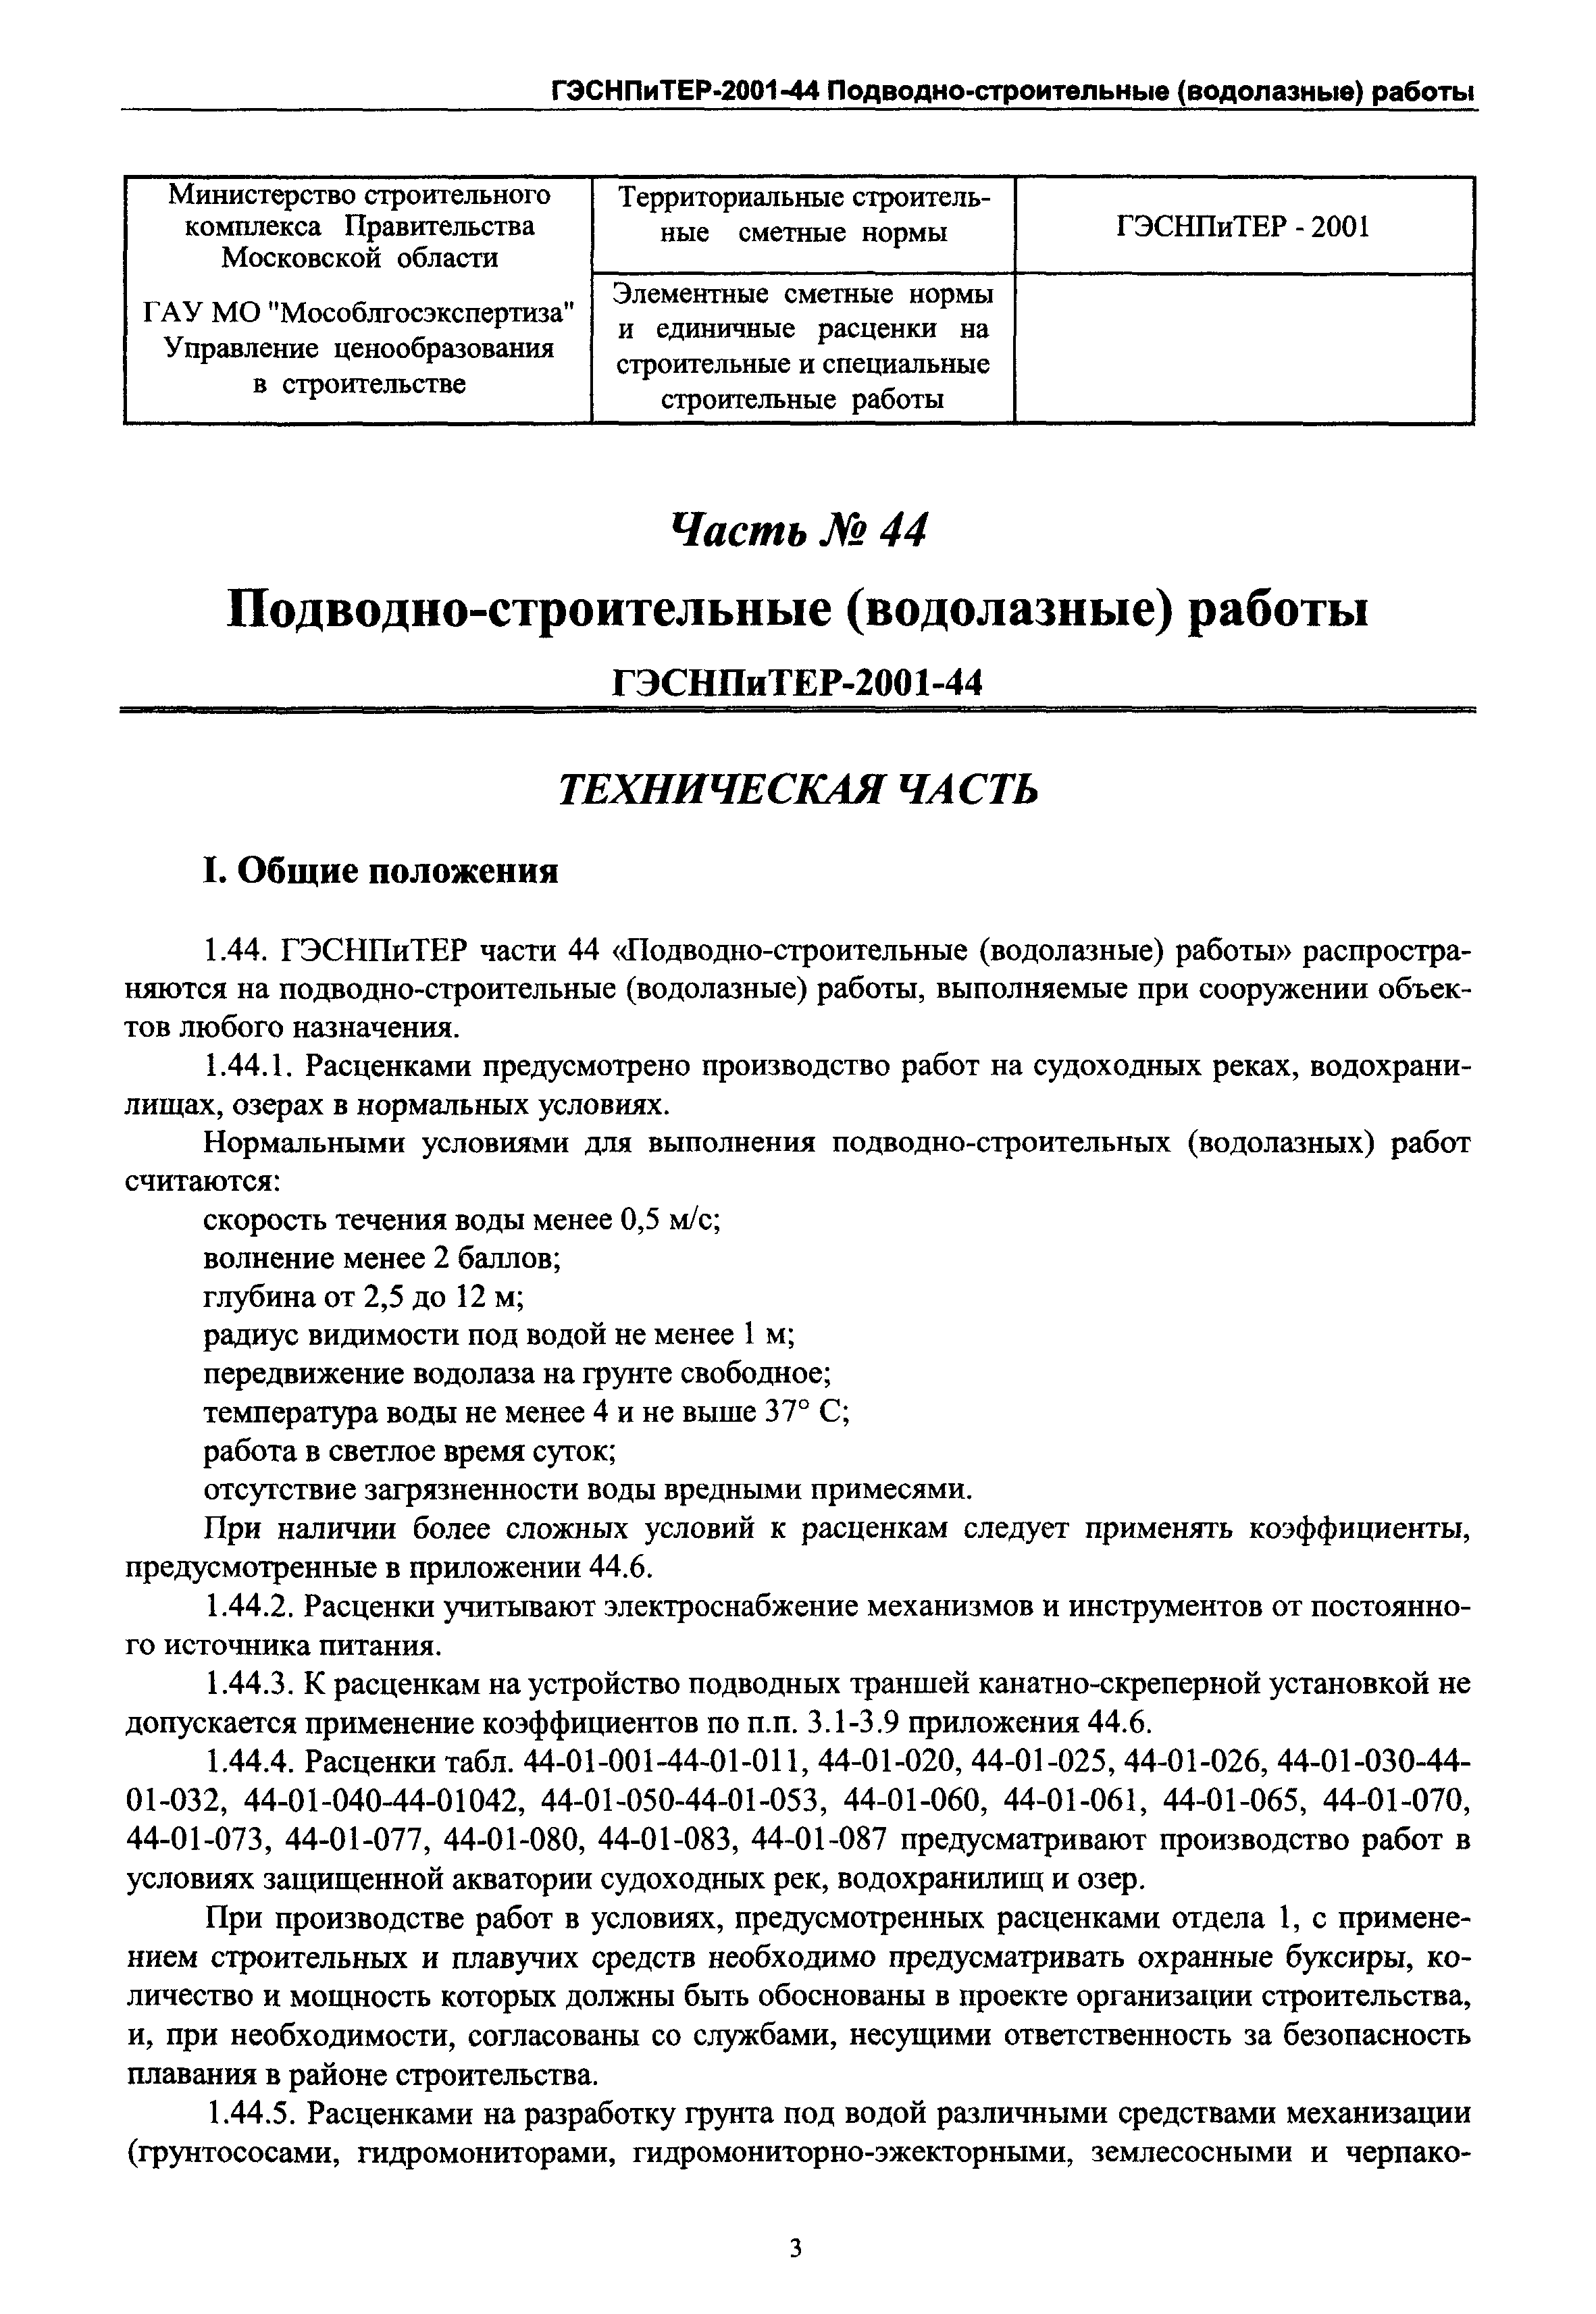 ГЭСНПиТЕР 2001-44 Московской области